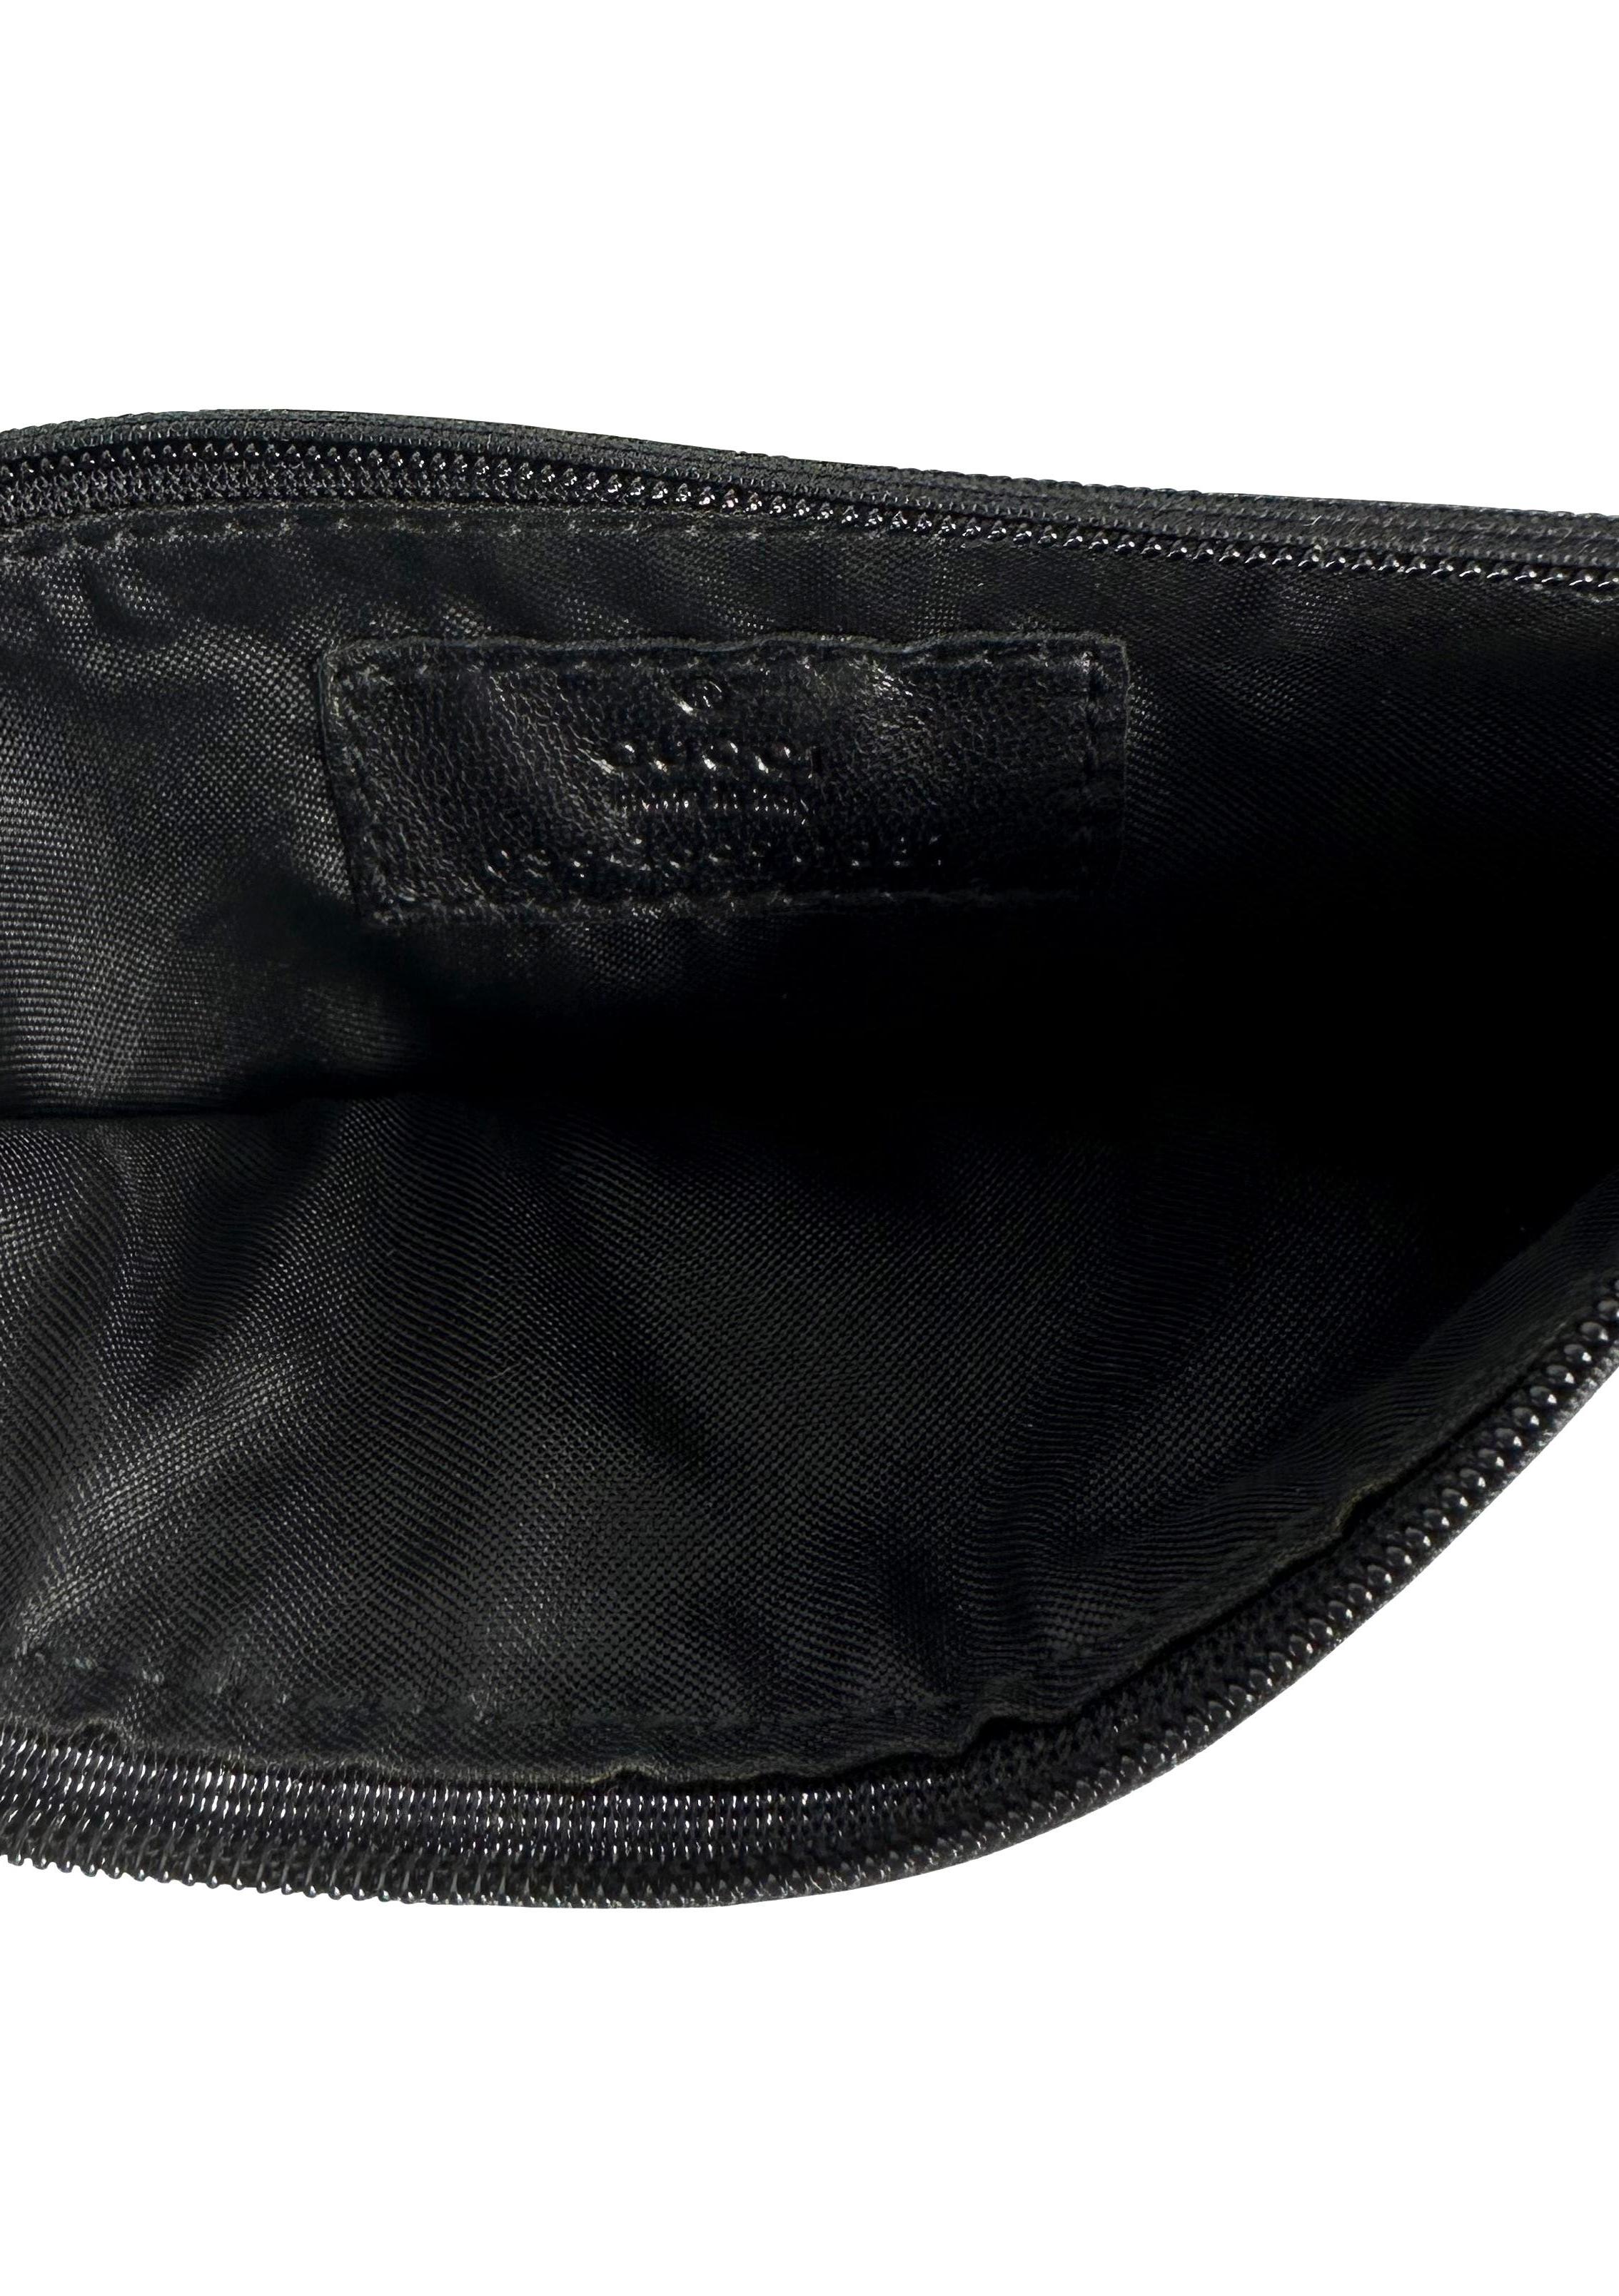 Gucci par Tom Ford, pochette portefeuille noire avec monogramme « GG » des années 2000 Pour femmes en vente